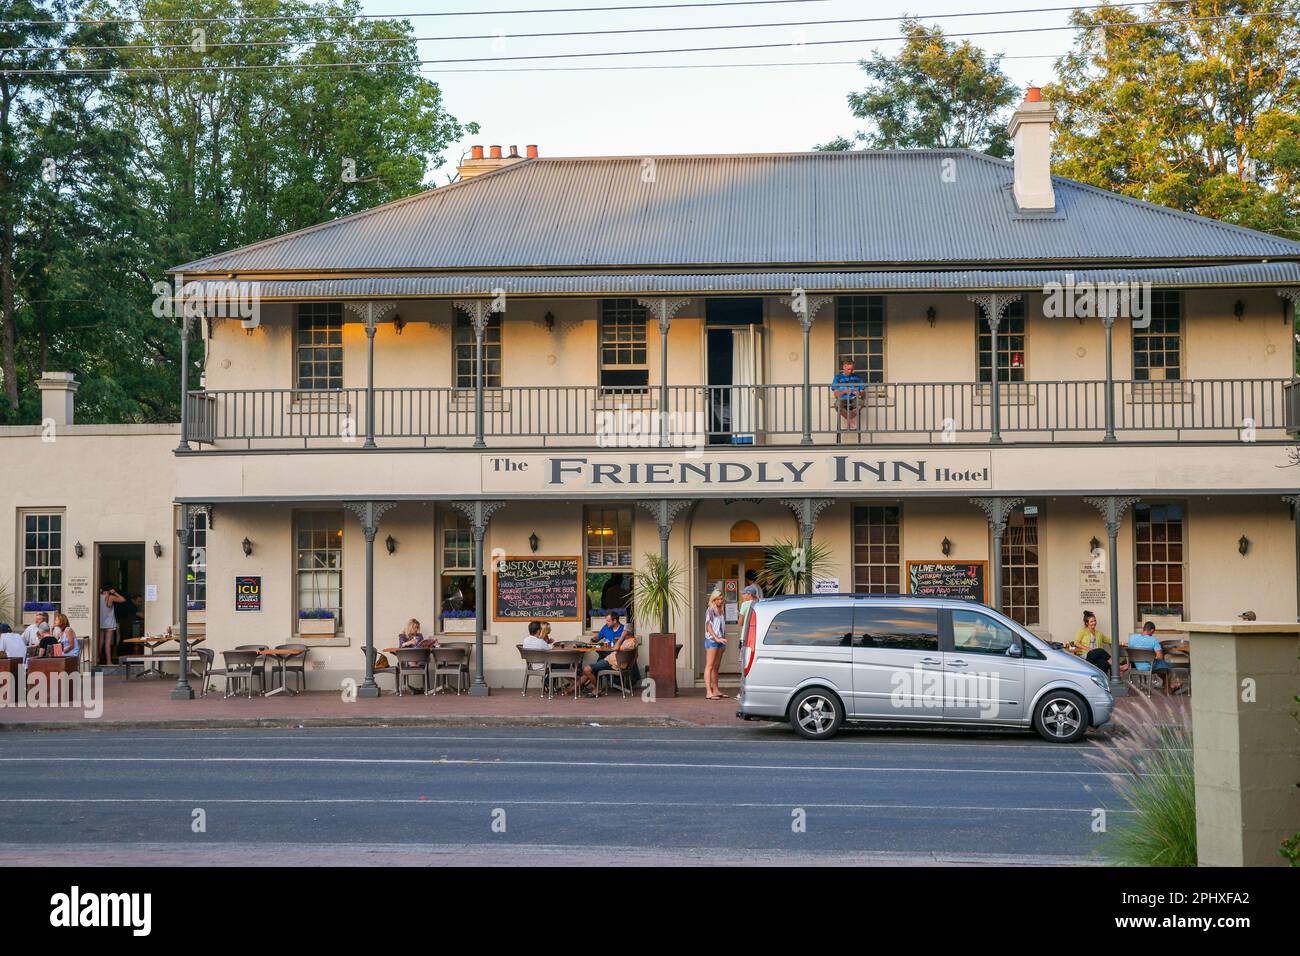 Kangaroo Valley Australie - Auberge historique conviviale de l'autre côté de la rue, à la lumière du soir, avec des clients qui apprécient l'hospitalité en face Banque D'Images